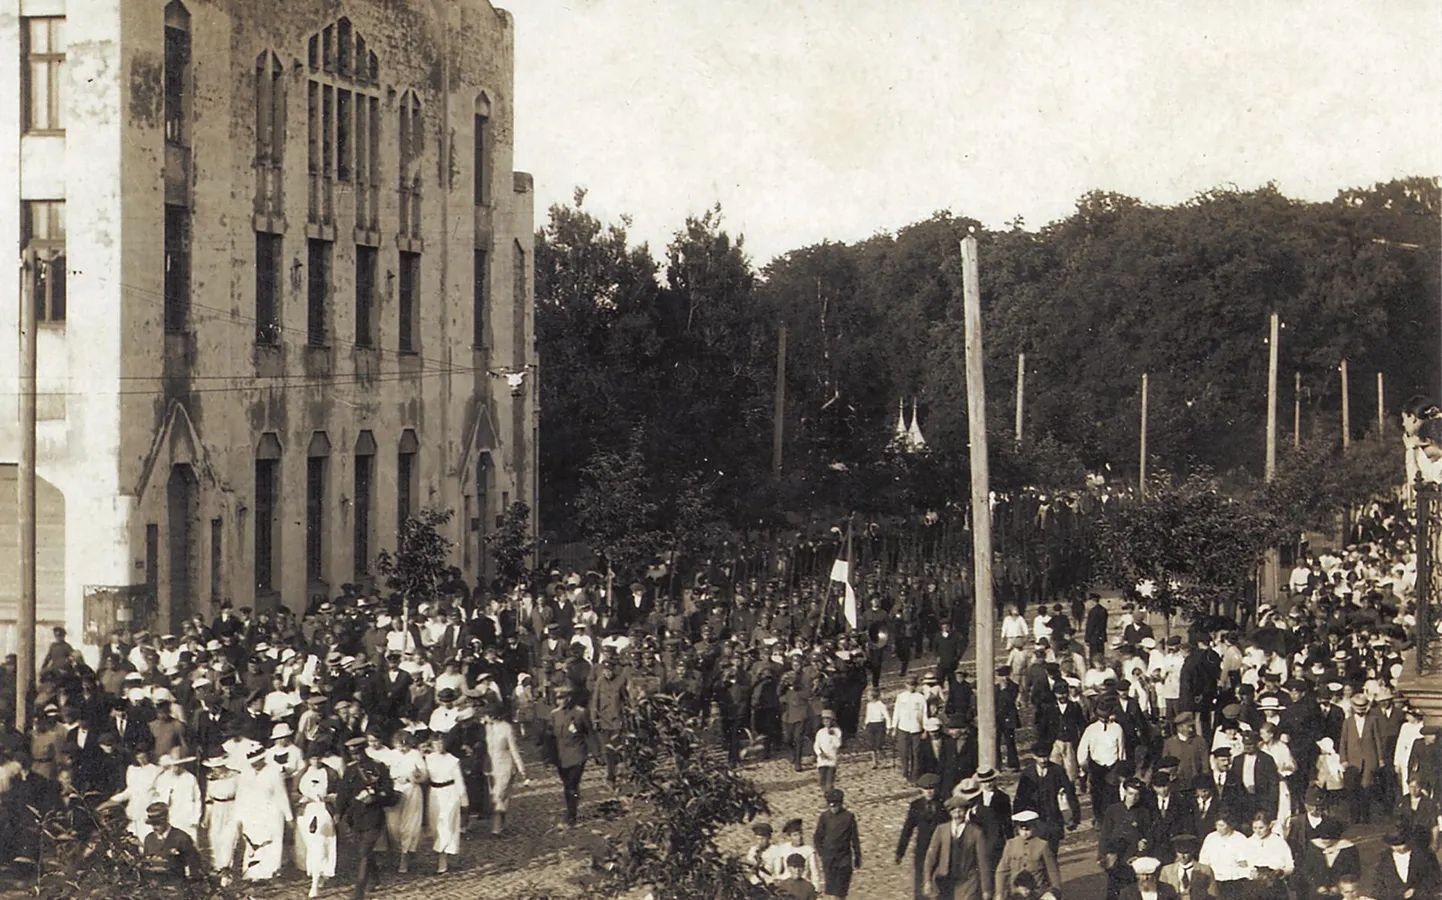 Eesti rahvaväe 9. polgu pidulik sissemarss Pärnusse 23. juunil 1919. Pärnakad tervitasid kodukandi sõdalasi Endla teatri ees.